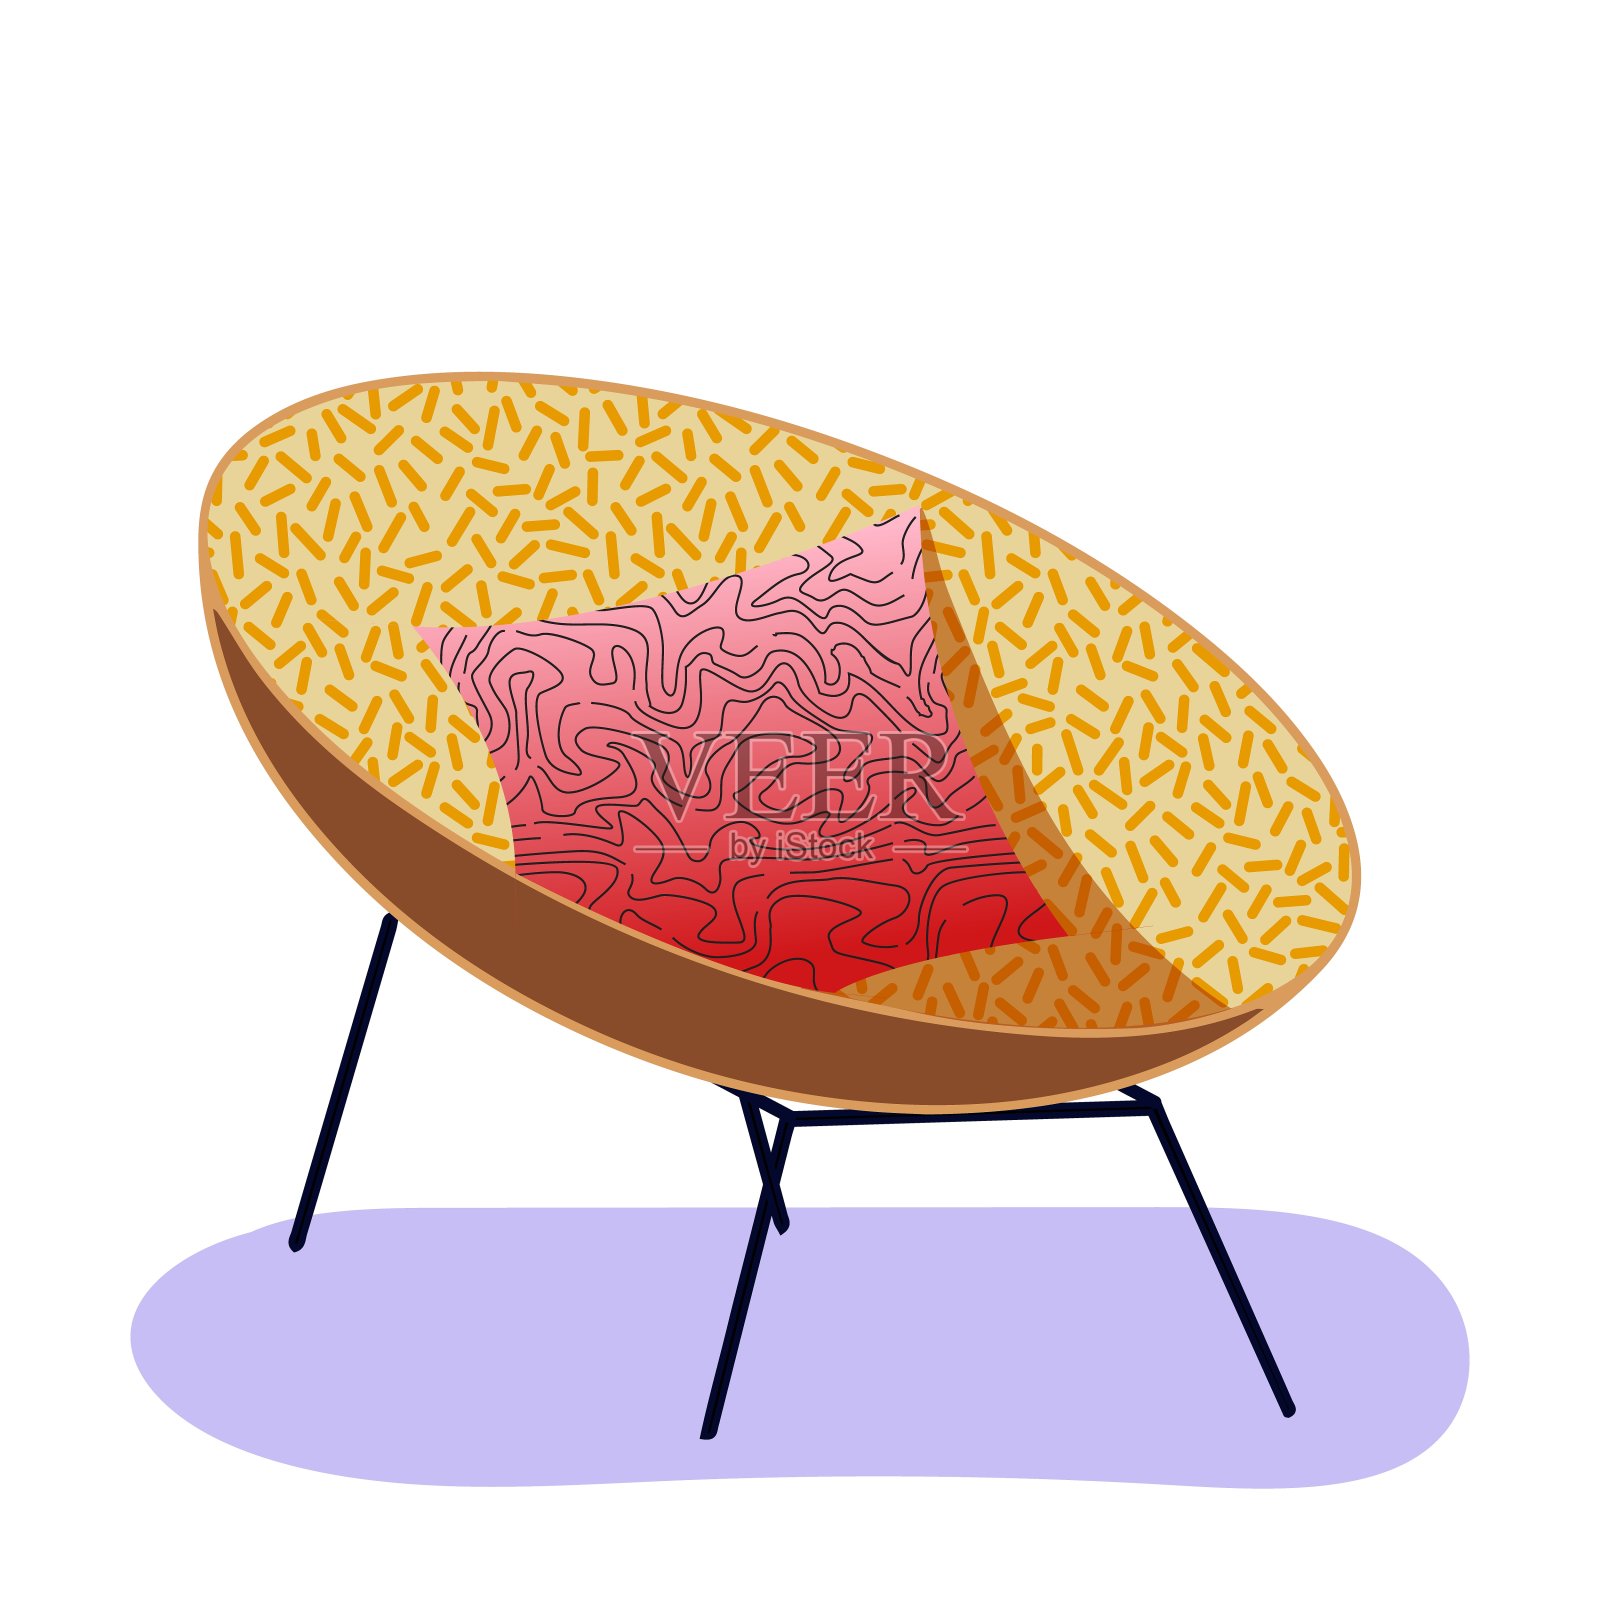 斯堪的纳维亚的平面风格。紫色地毯上，舒适的橙色扶手椅和红色枕头。孤立矢量插图，白色背景。室内装饰元素，温馨家居概念。客厅家具。插画图片素材